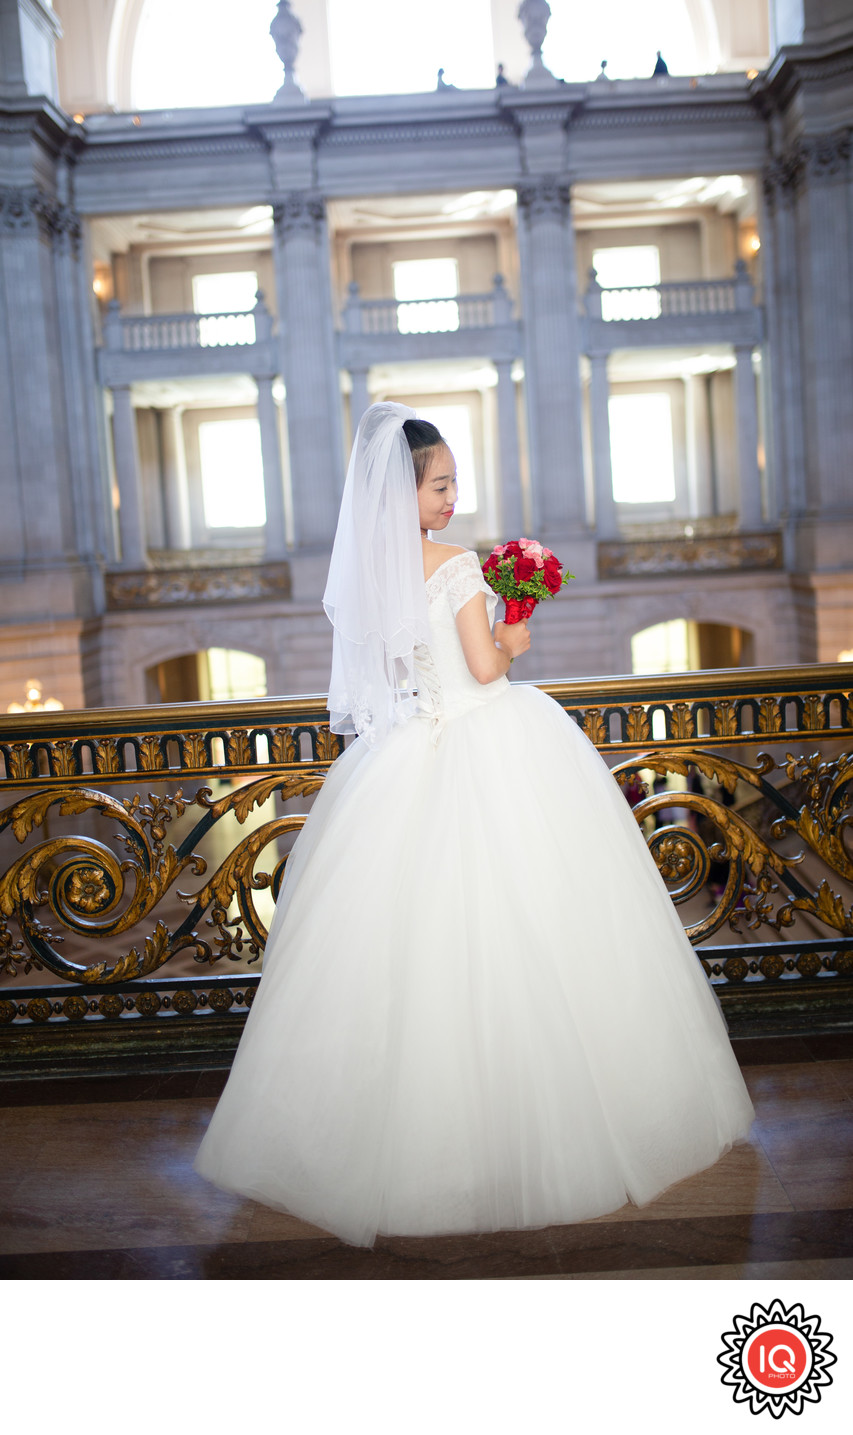  SF City Hall Mayor's Balcony Bride